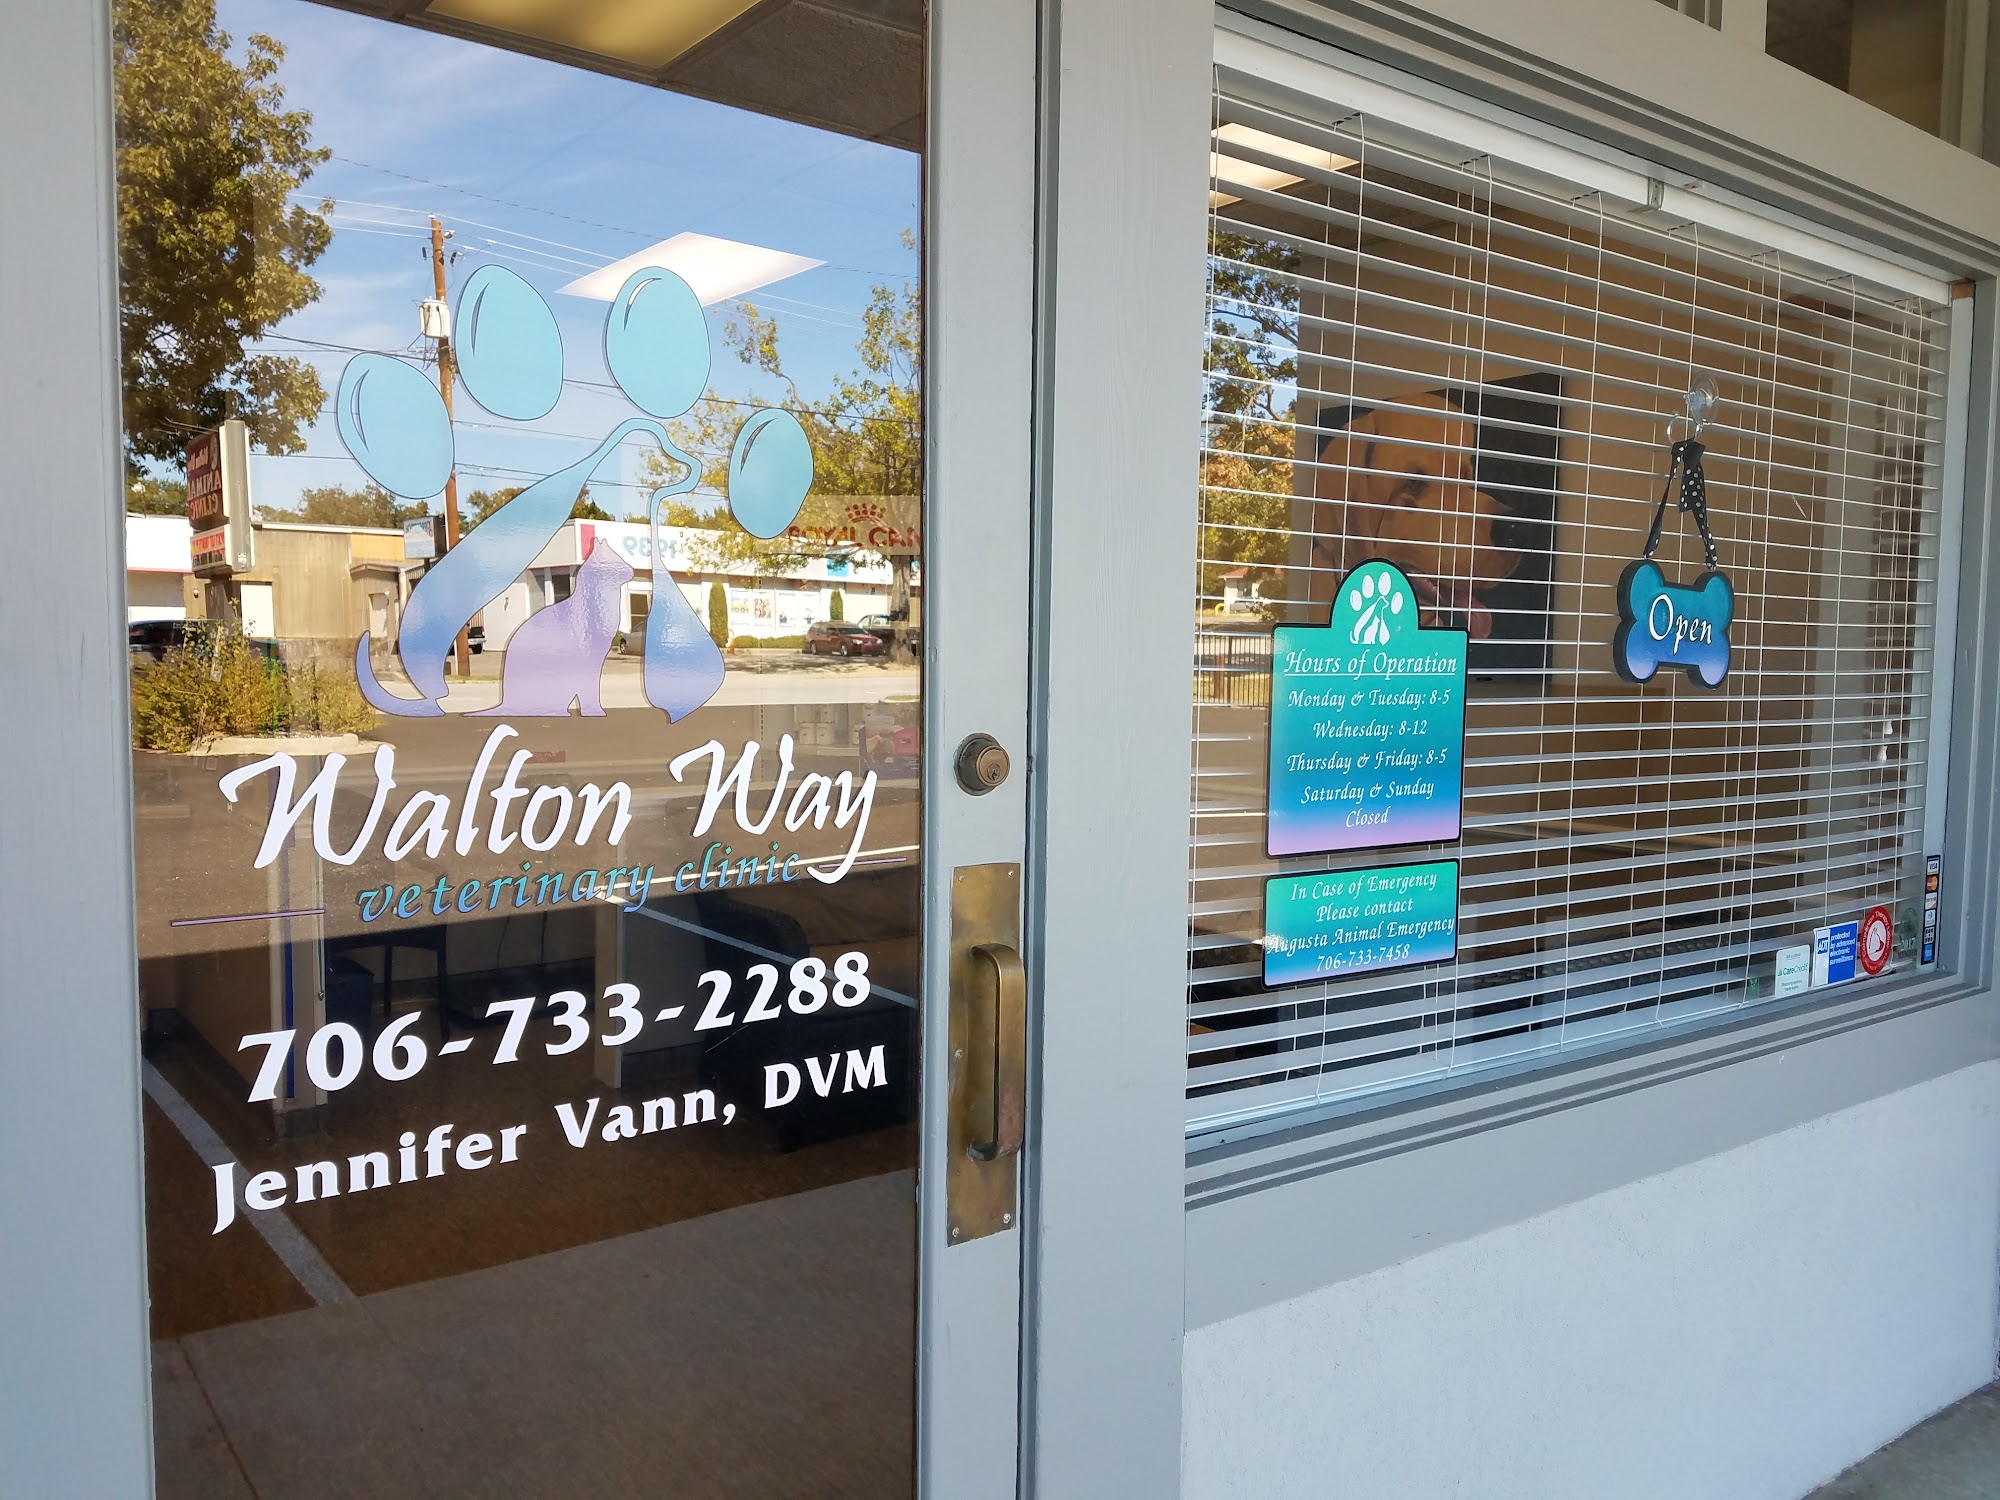 Walton Way Veterinary Clinic